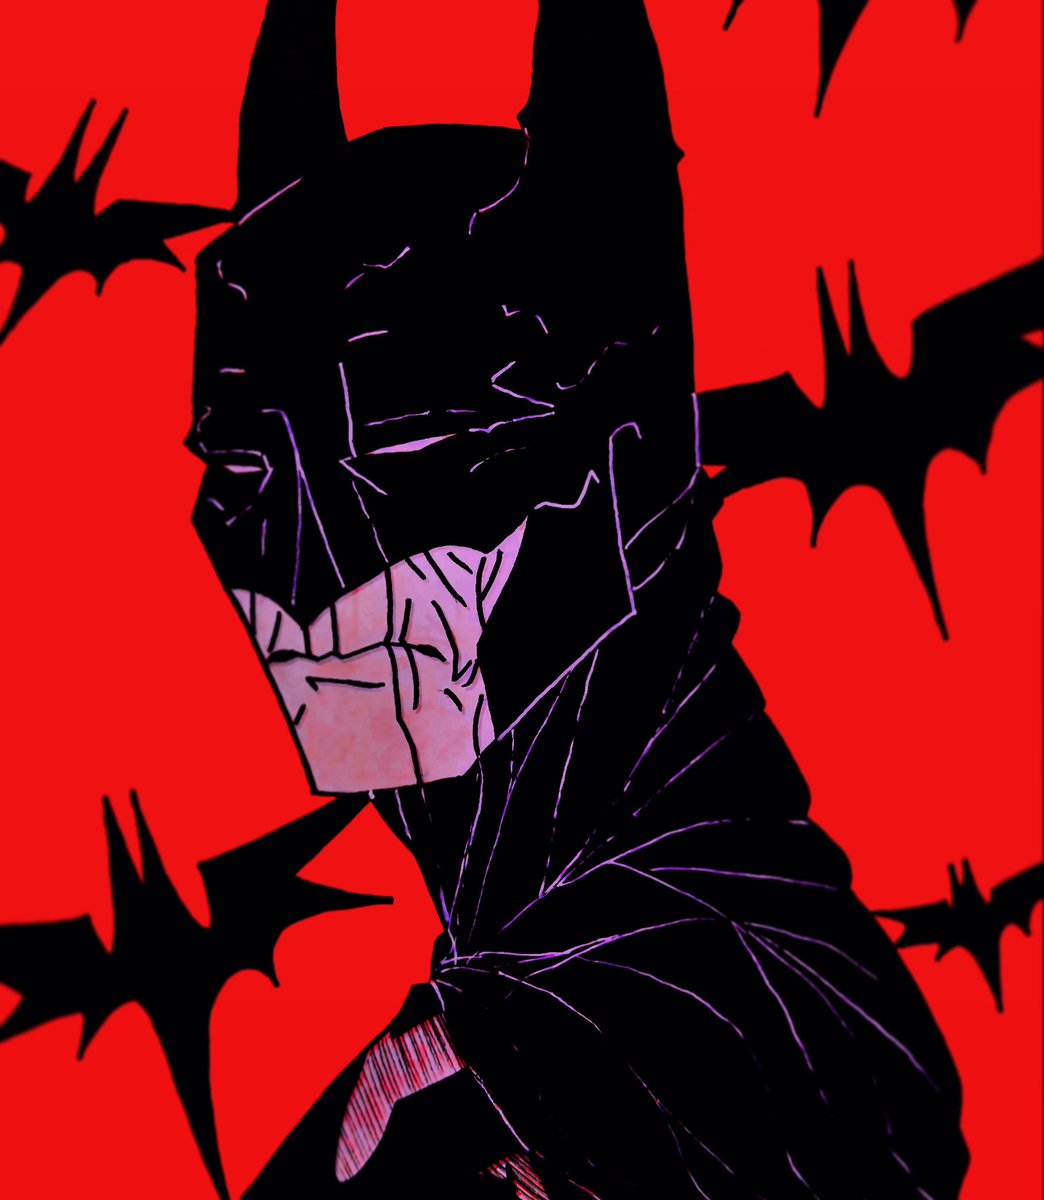 Batman bust art I’ve done so far :} 

#batman #brucewayne #TheBatman #kevinconroy #batmantheanimatedseries #arkhamasylum #arkhamcity #arkhamknight #dccomics #dc